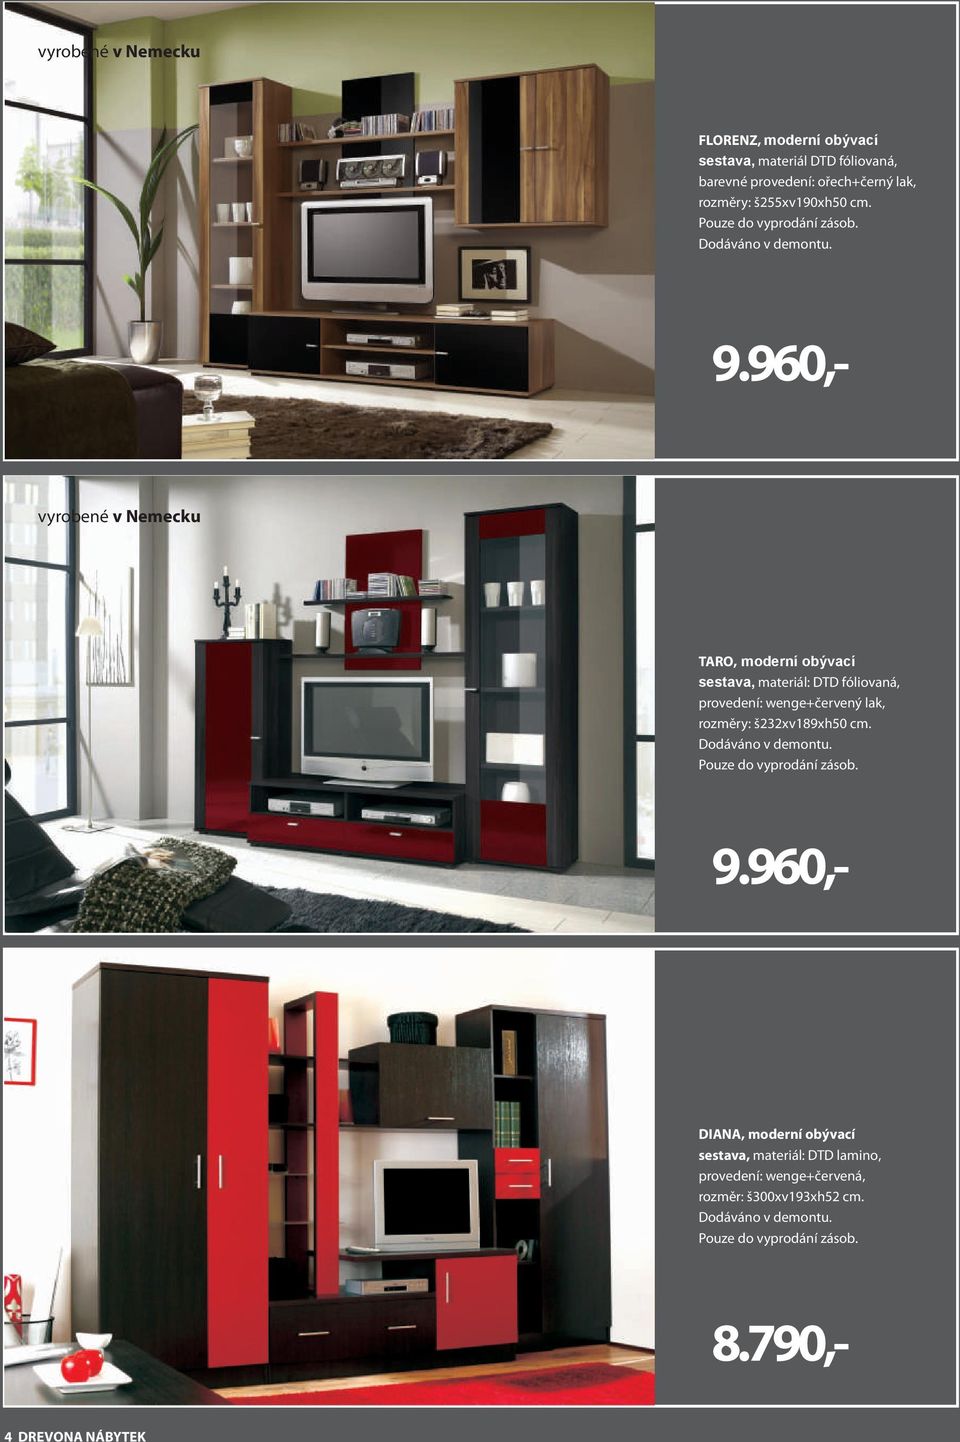 TARO, moderní obývací sestava, materiál: DTD fóliovaná, provedení: wenge+červený lak, rozměry: š232xv189xh50